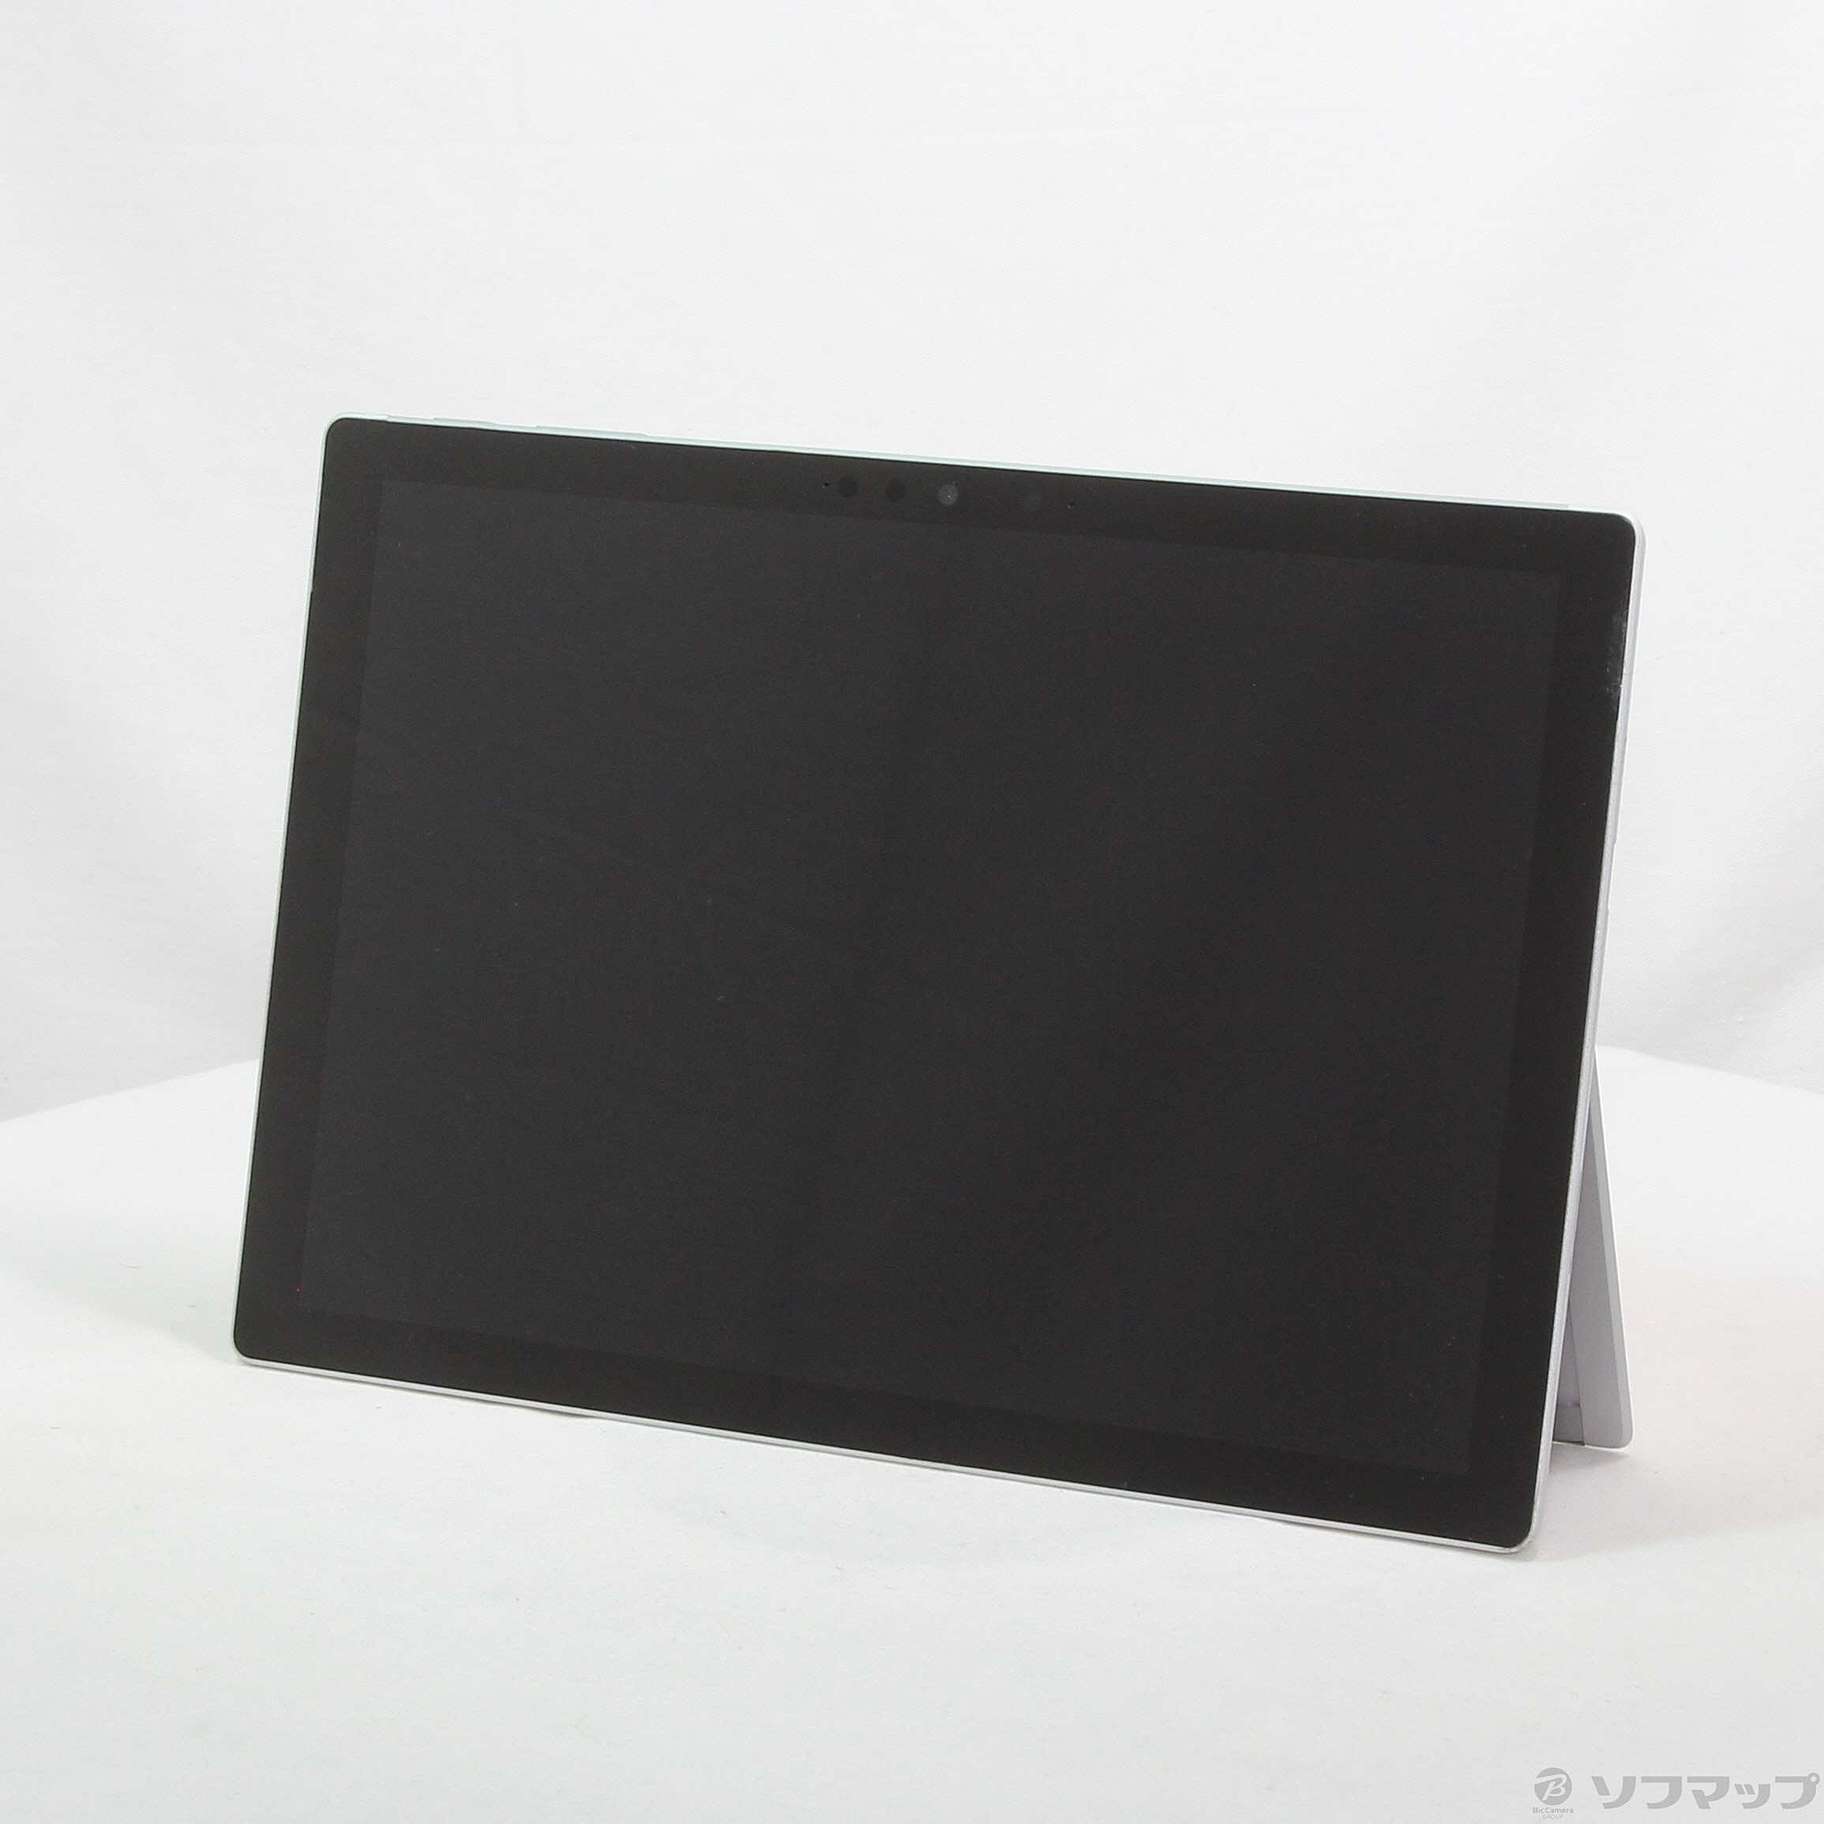 大阪激安SurfacePro7 PUV-00027 Windowsタブレットブラック タブレット